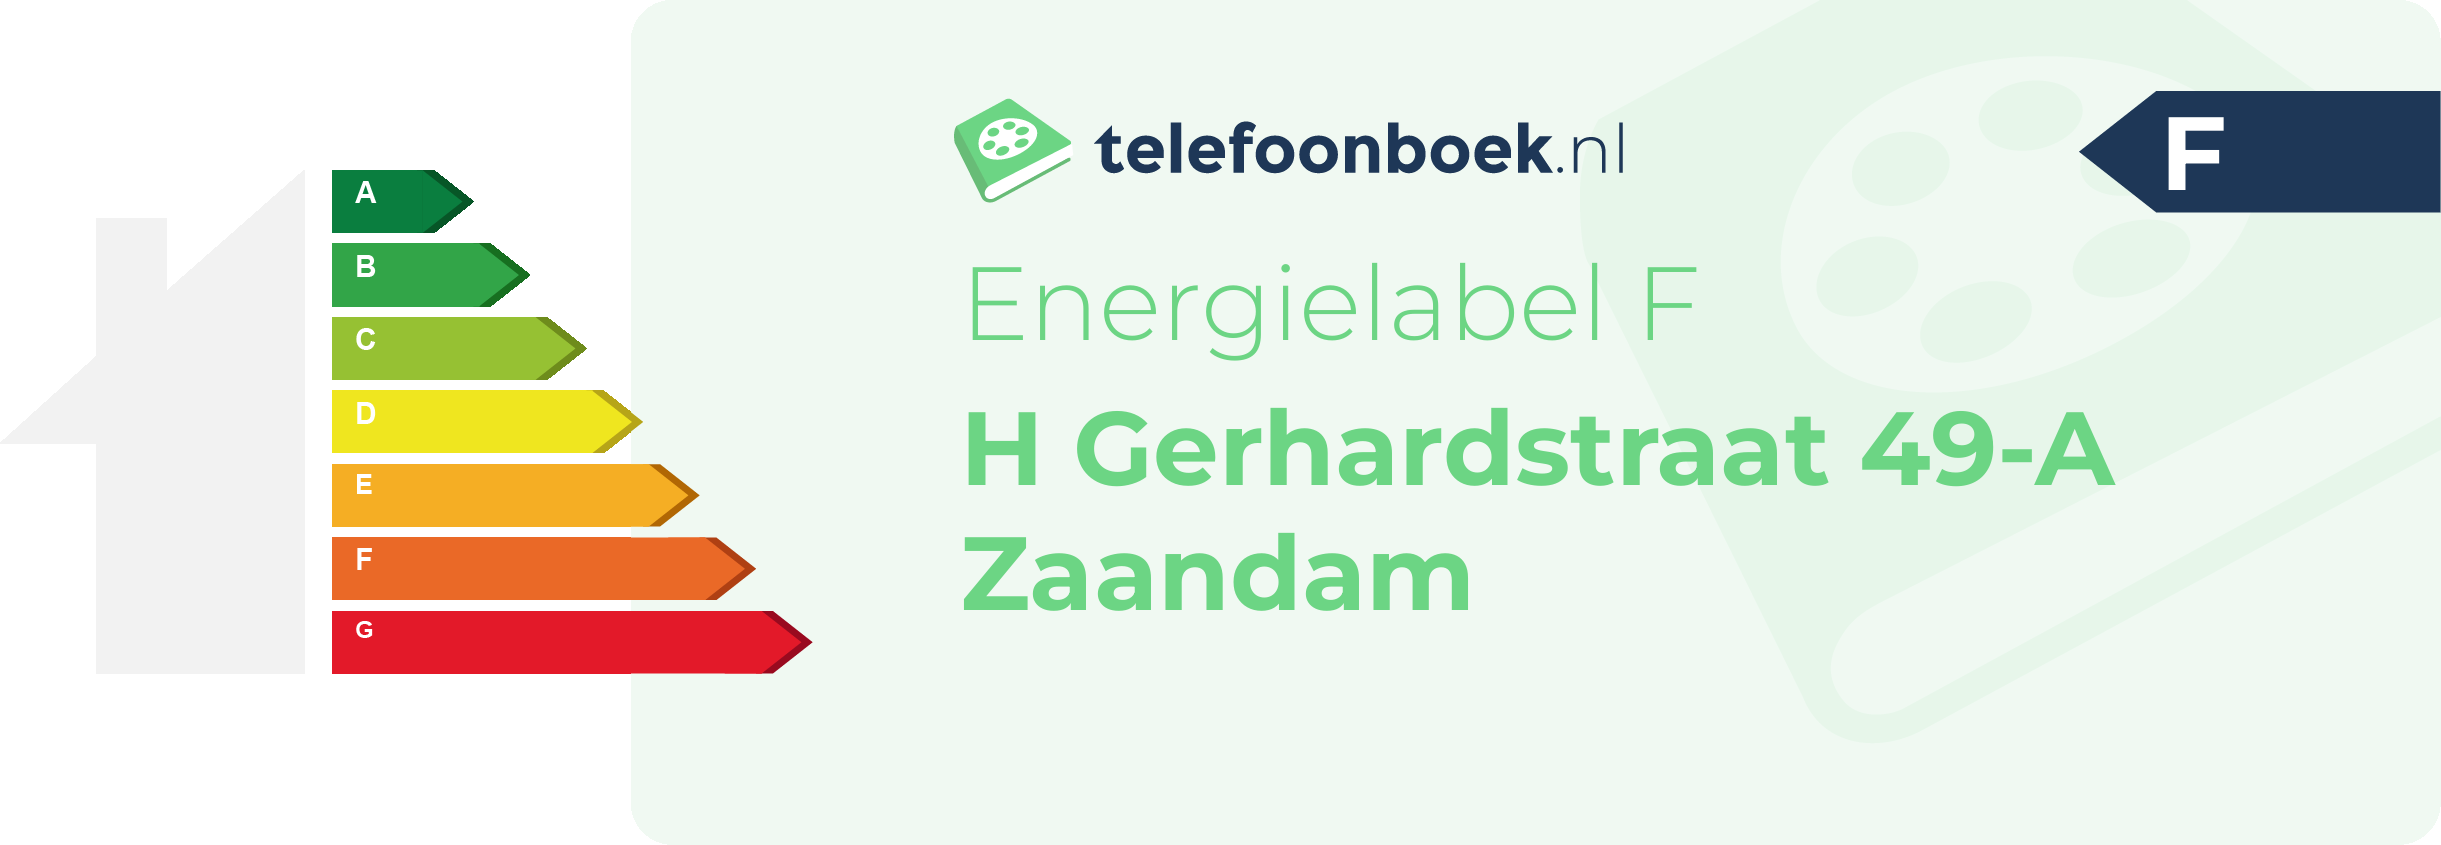 Energielabel H Gerhardstraat 49-A Zaandam